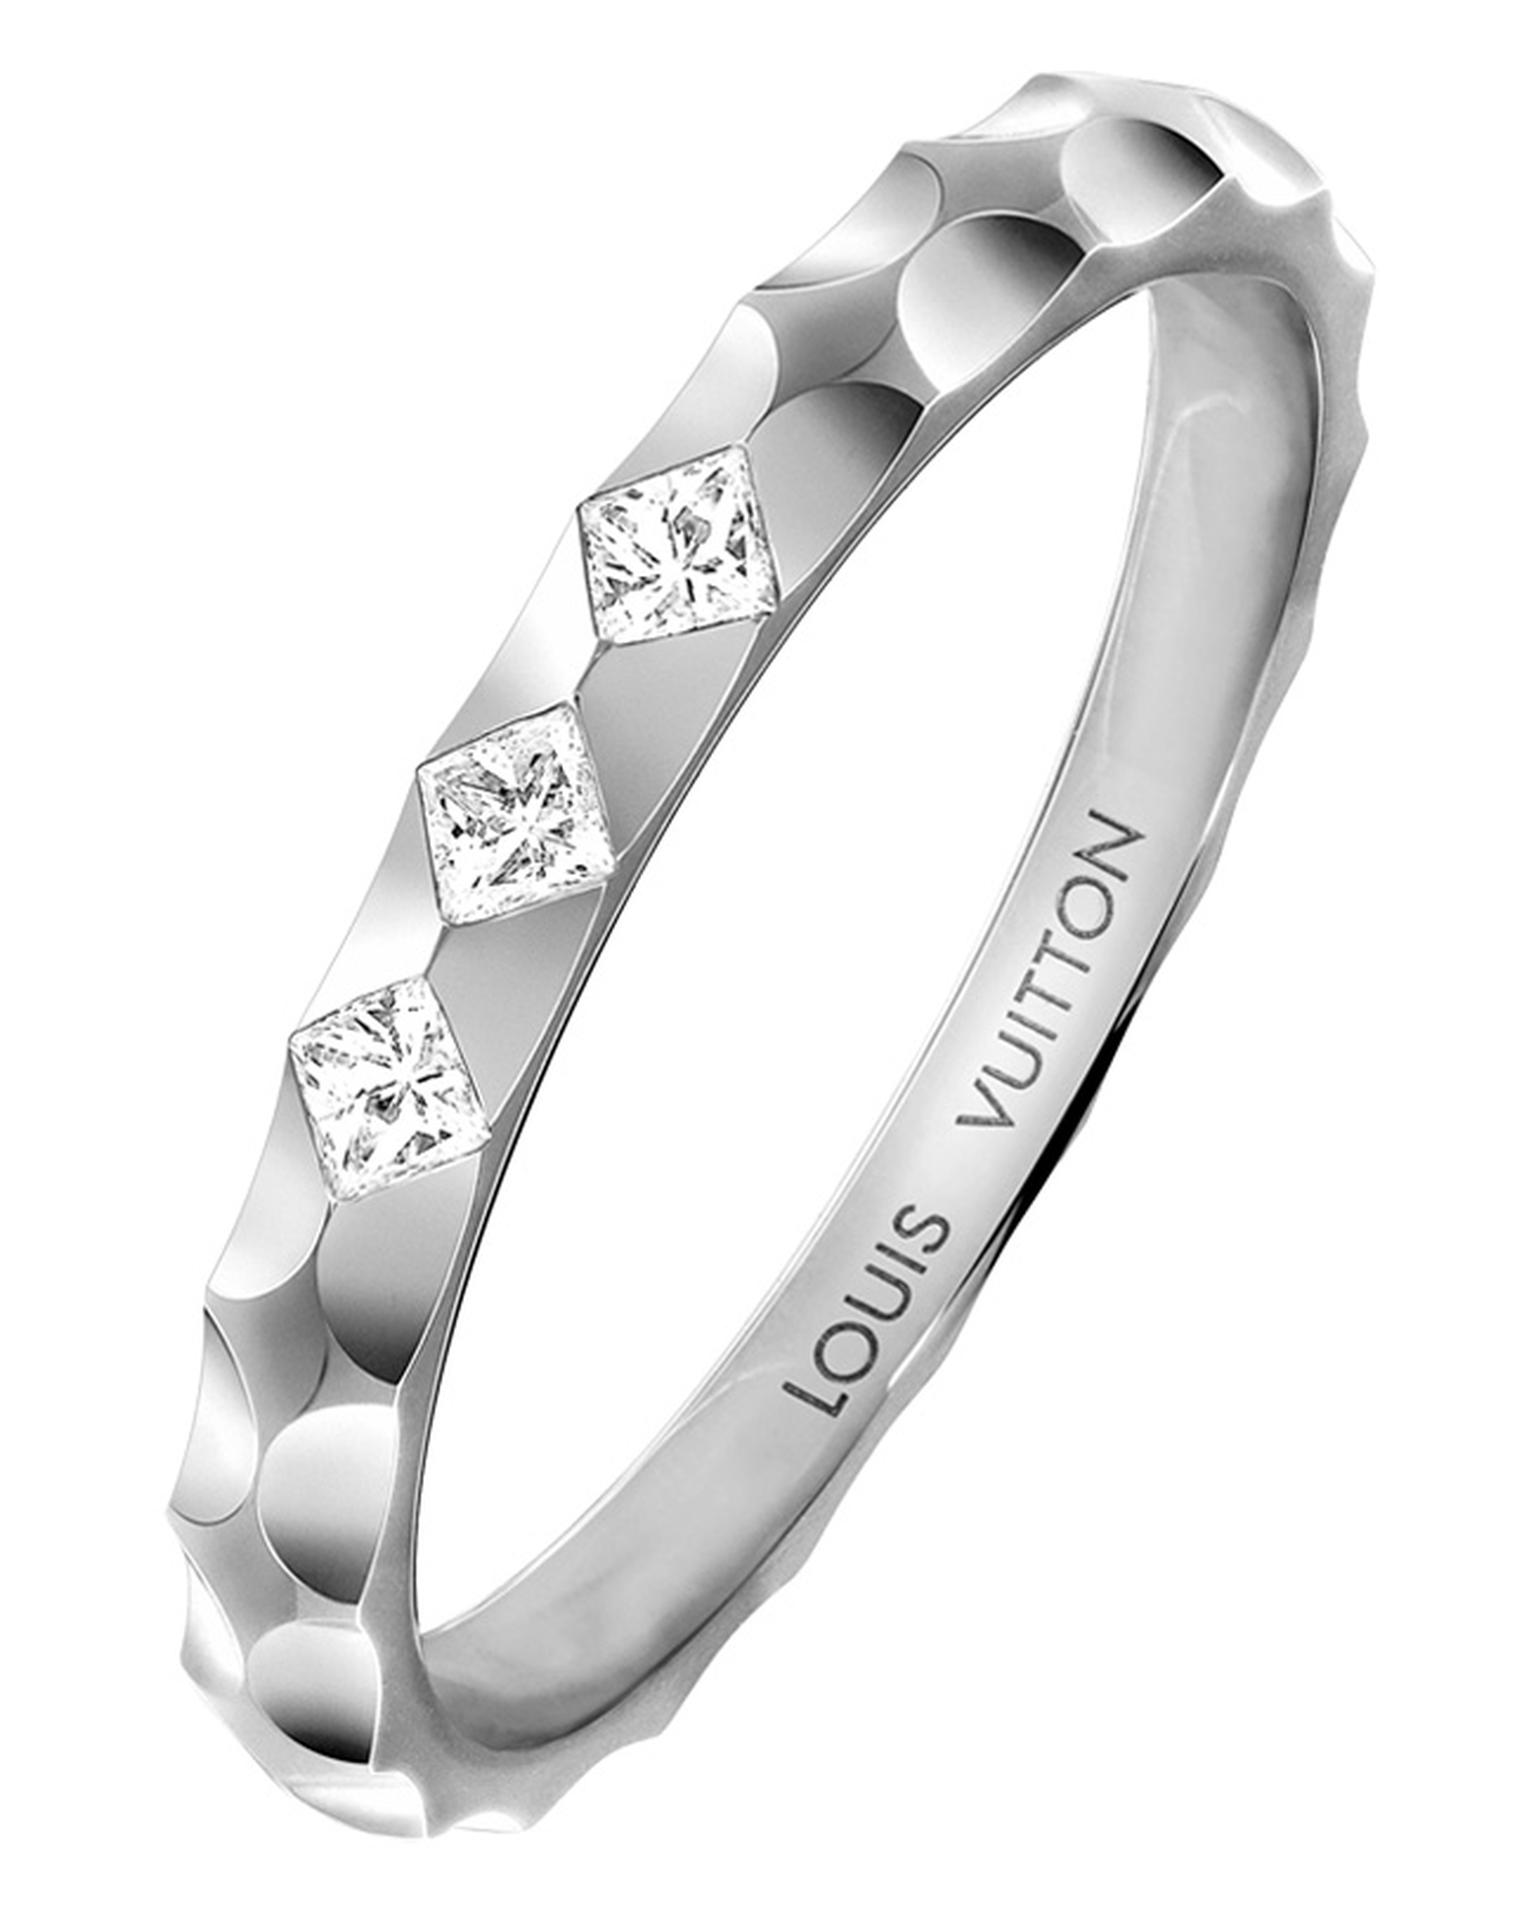 Louis Vuitton Monogram Infini wedding ring_20130830_Main